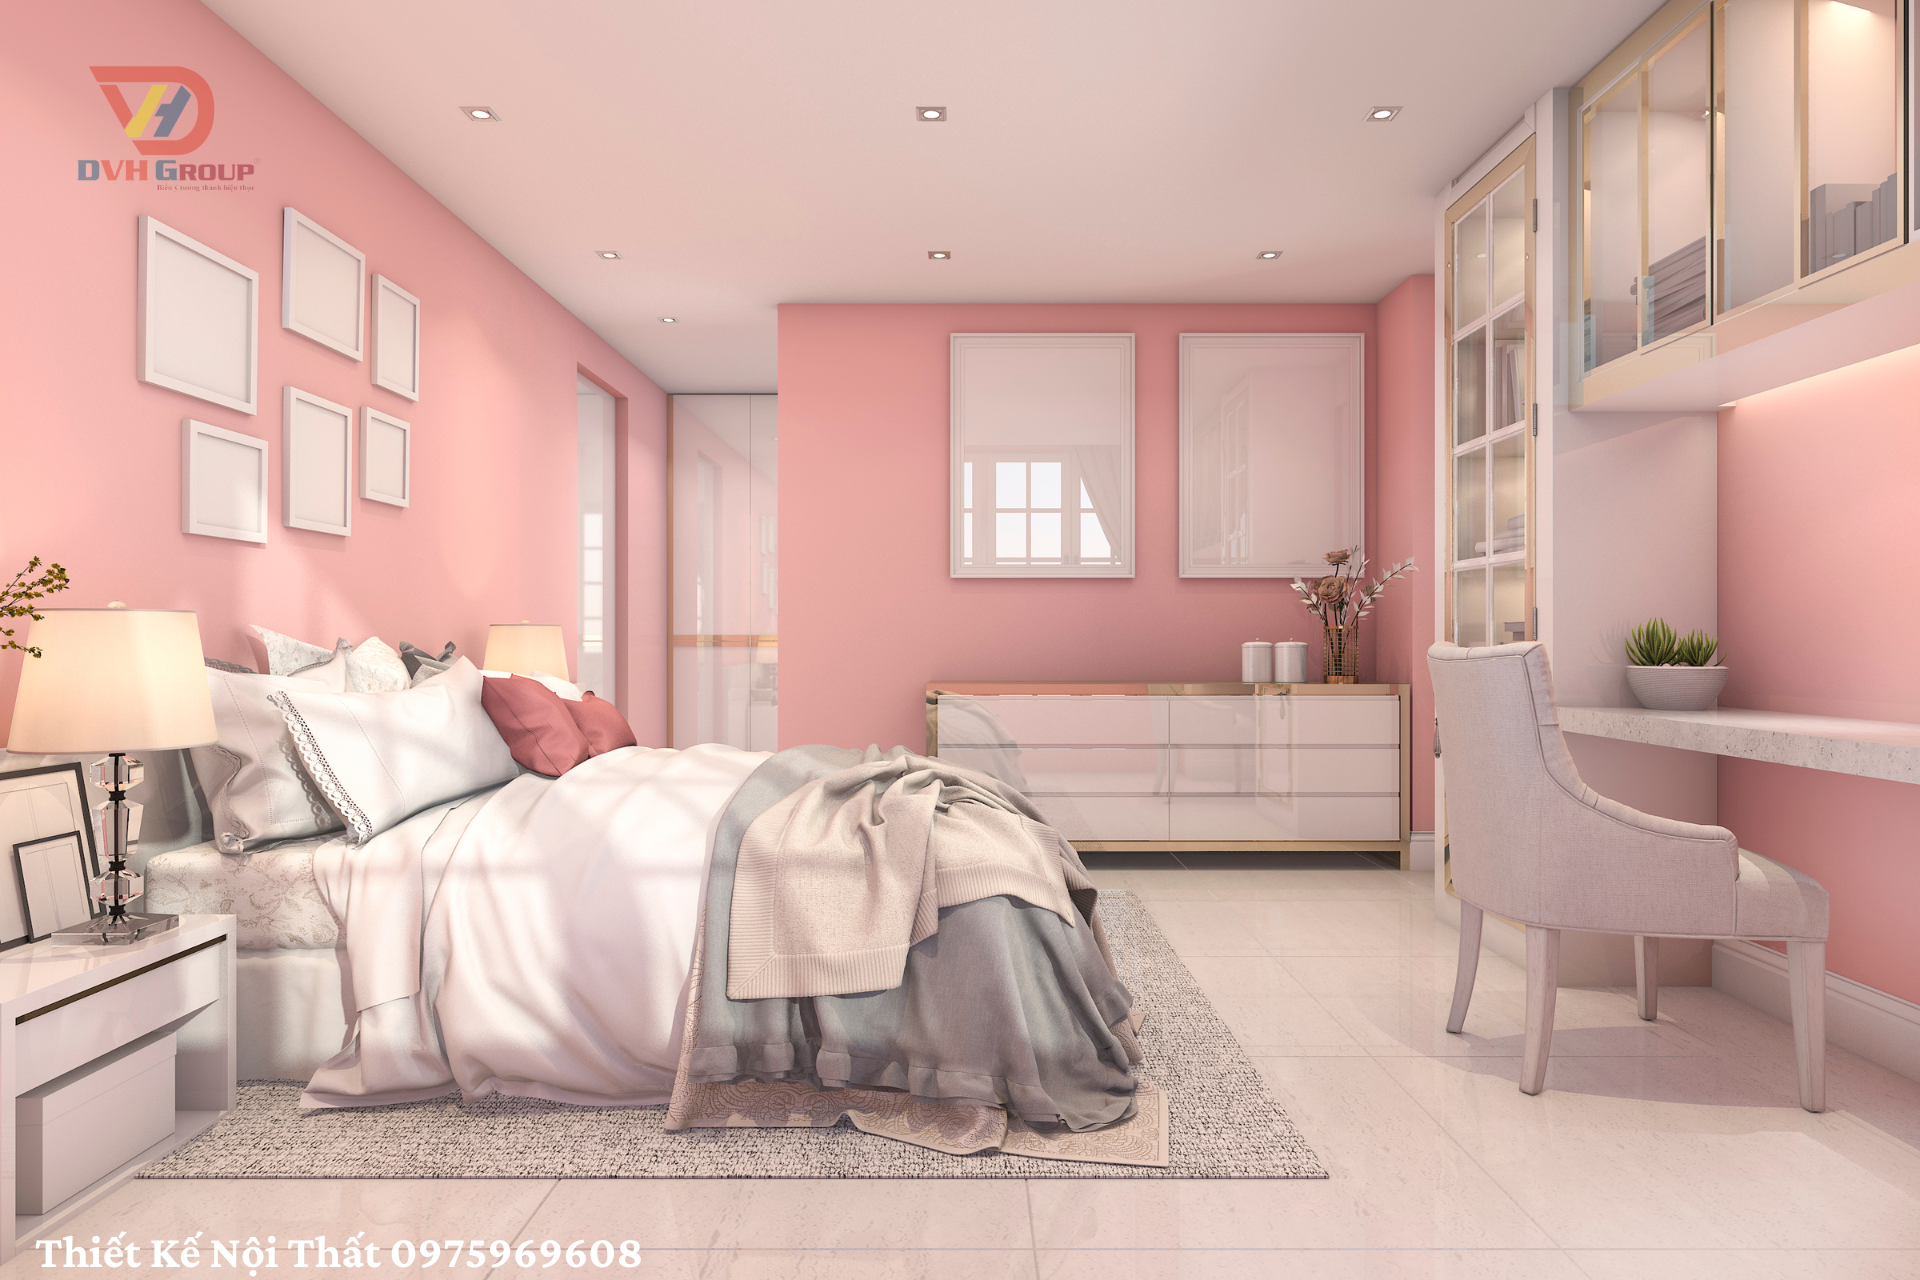 Thiết kế phòng ngủ cho bé gái màu hồng